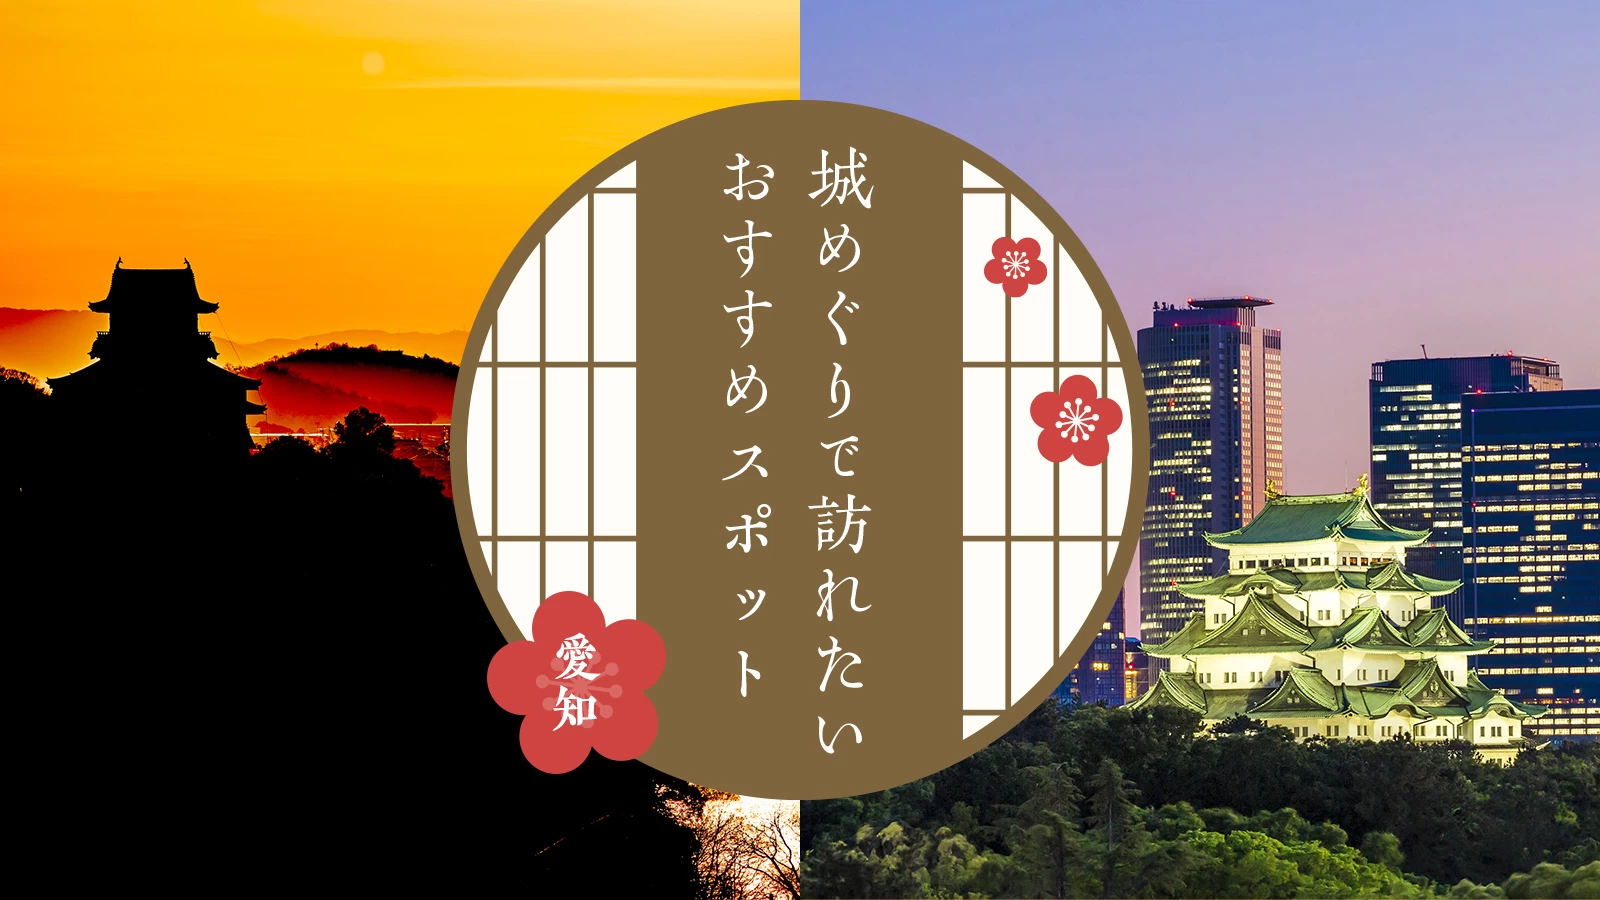 【愛知・観光情報】城めぐりで訪れたいおすすめスポット24選